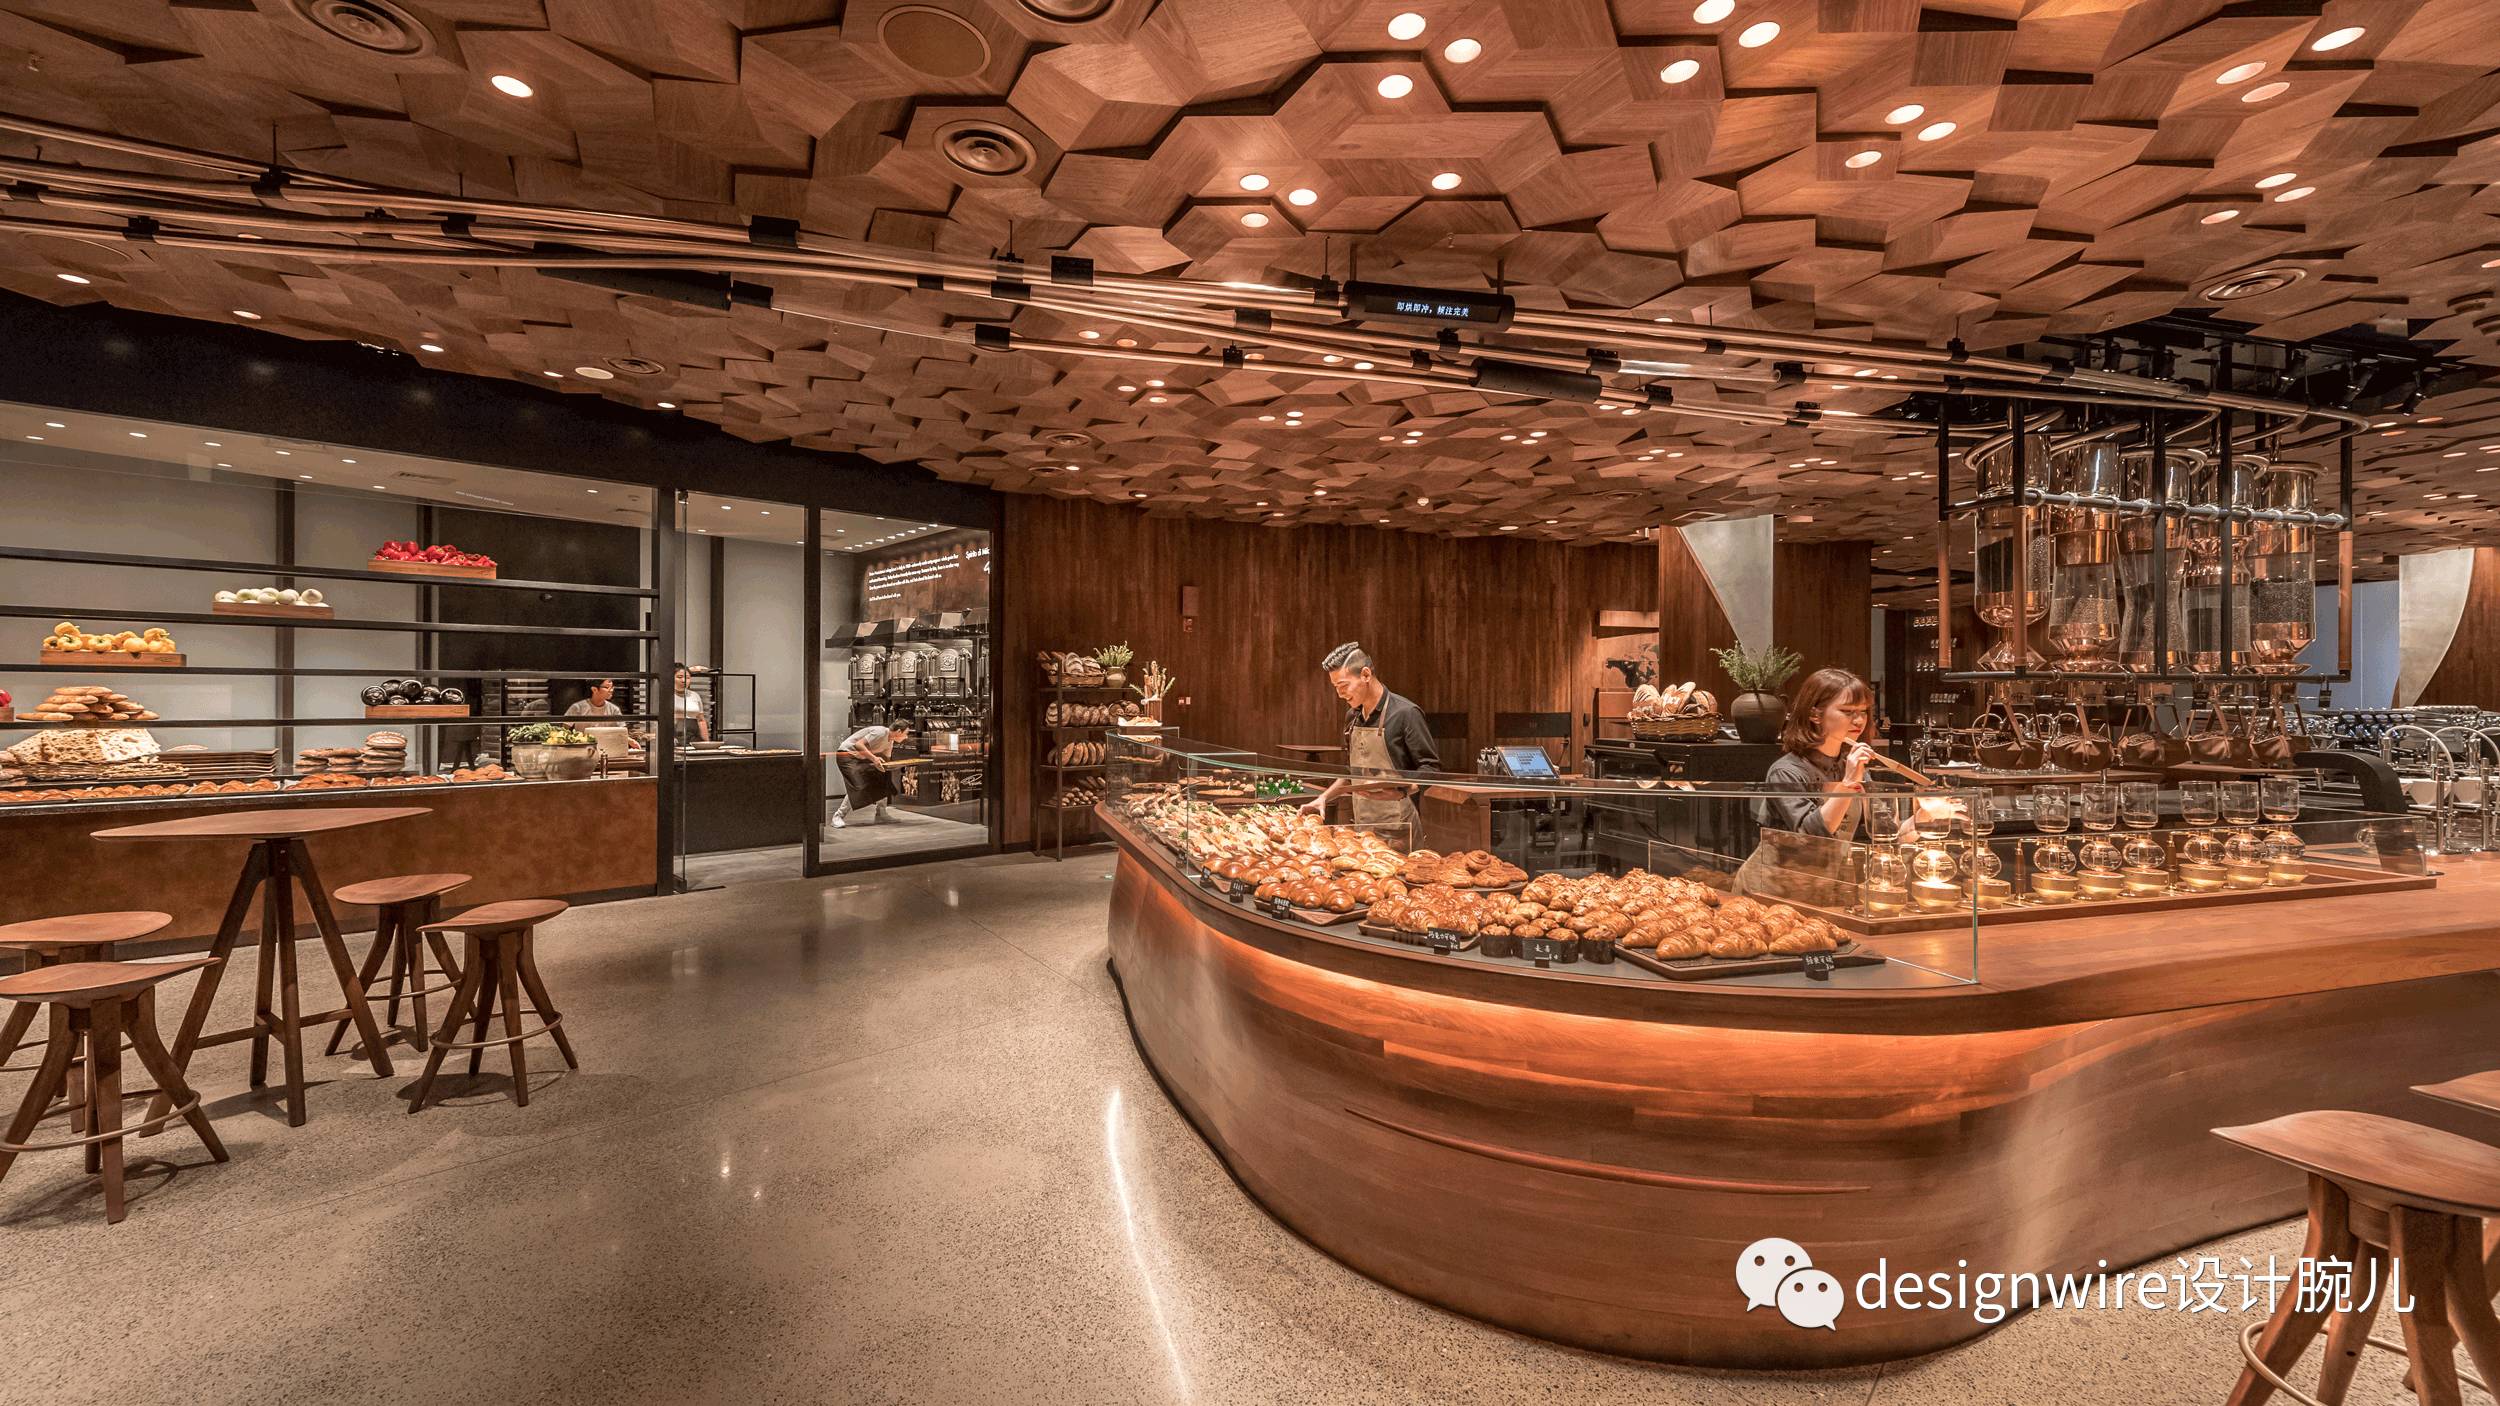 上海,一座星巴克全球最大烘焙工坊体验店设计